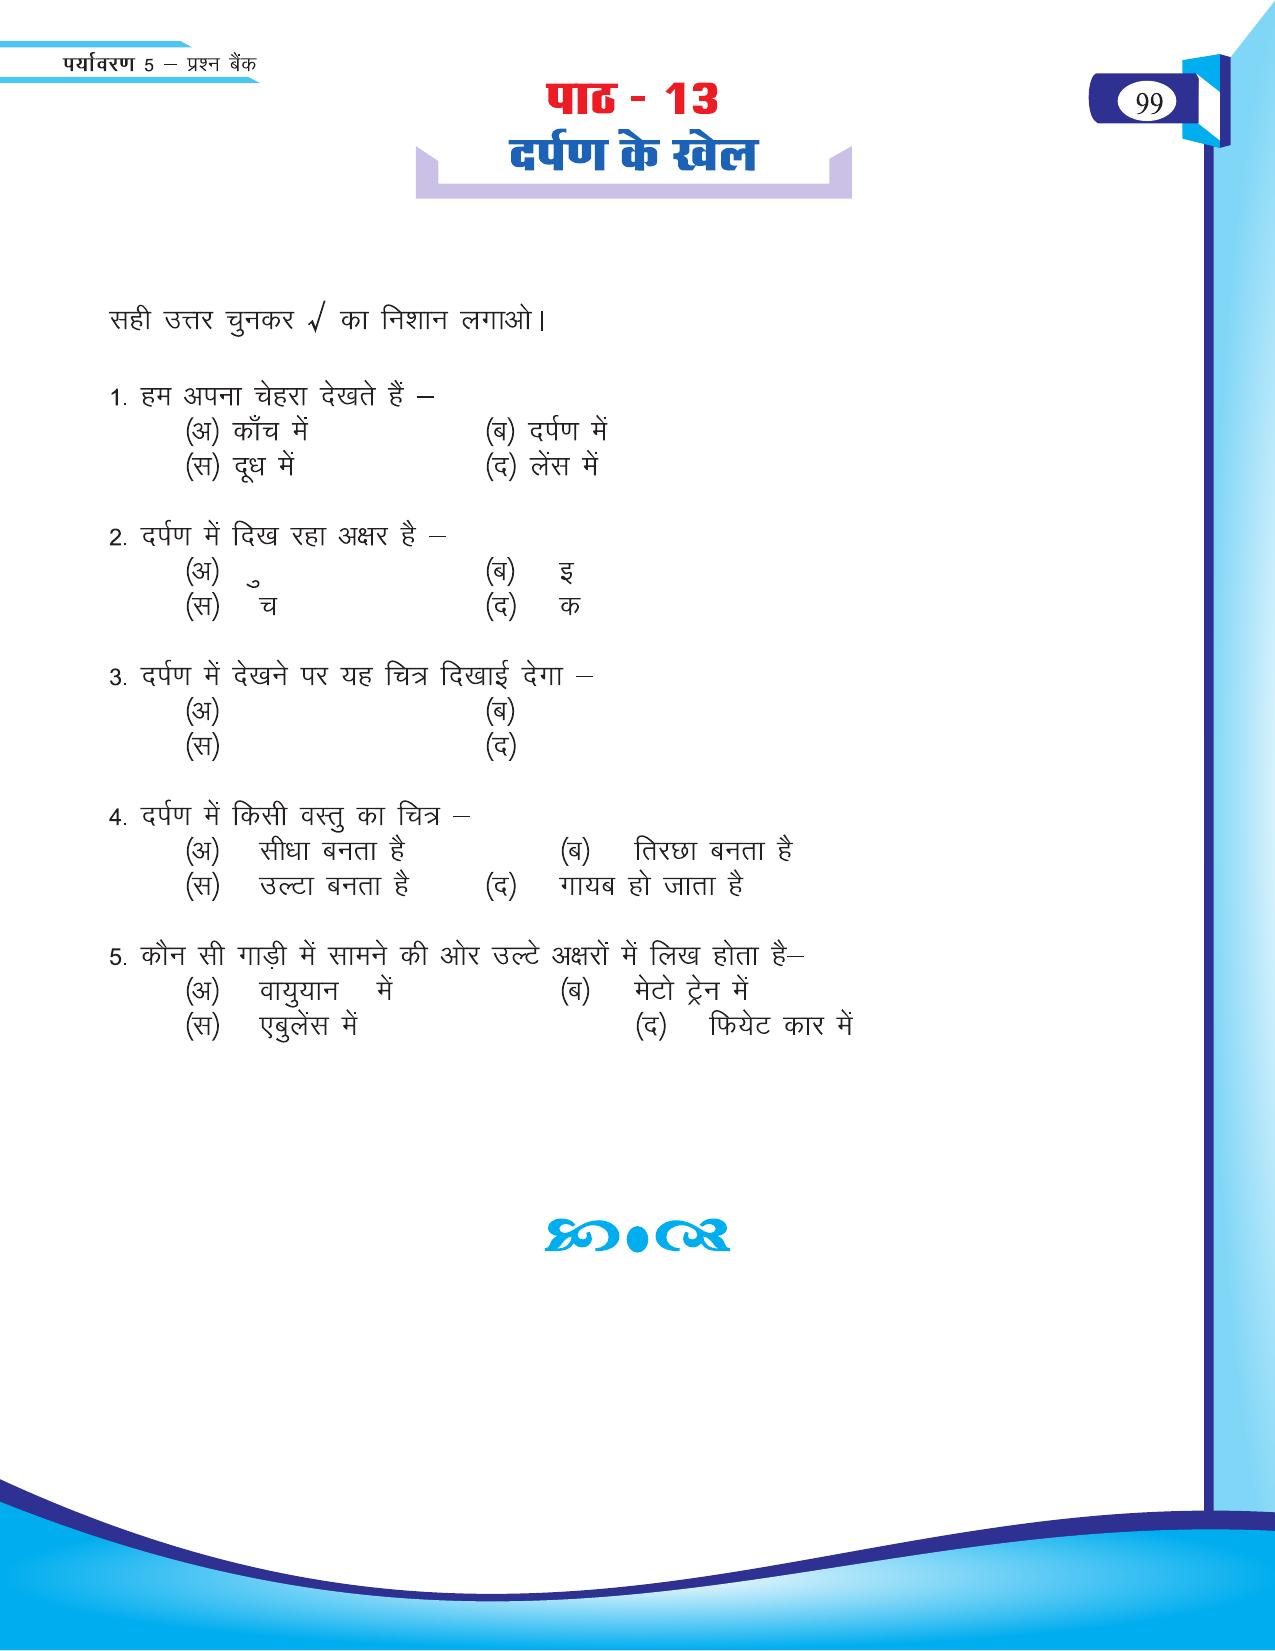 Chhattisgarh Board Class 5 EVS Question Bank 2015-16 - Page 25